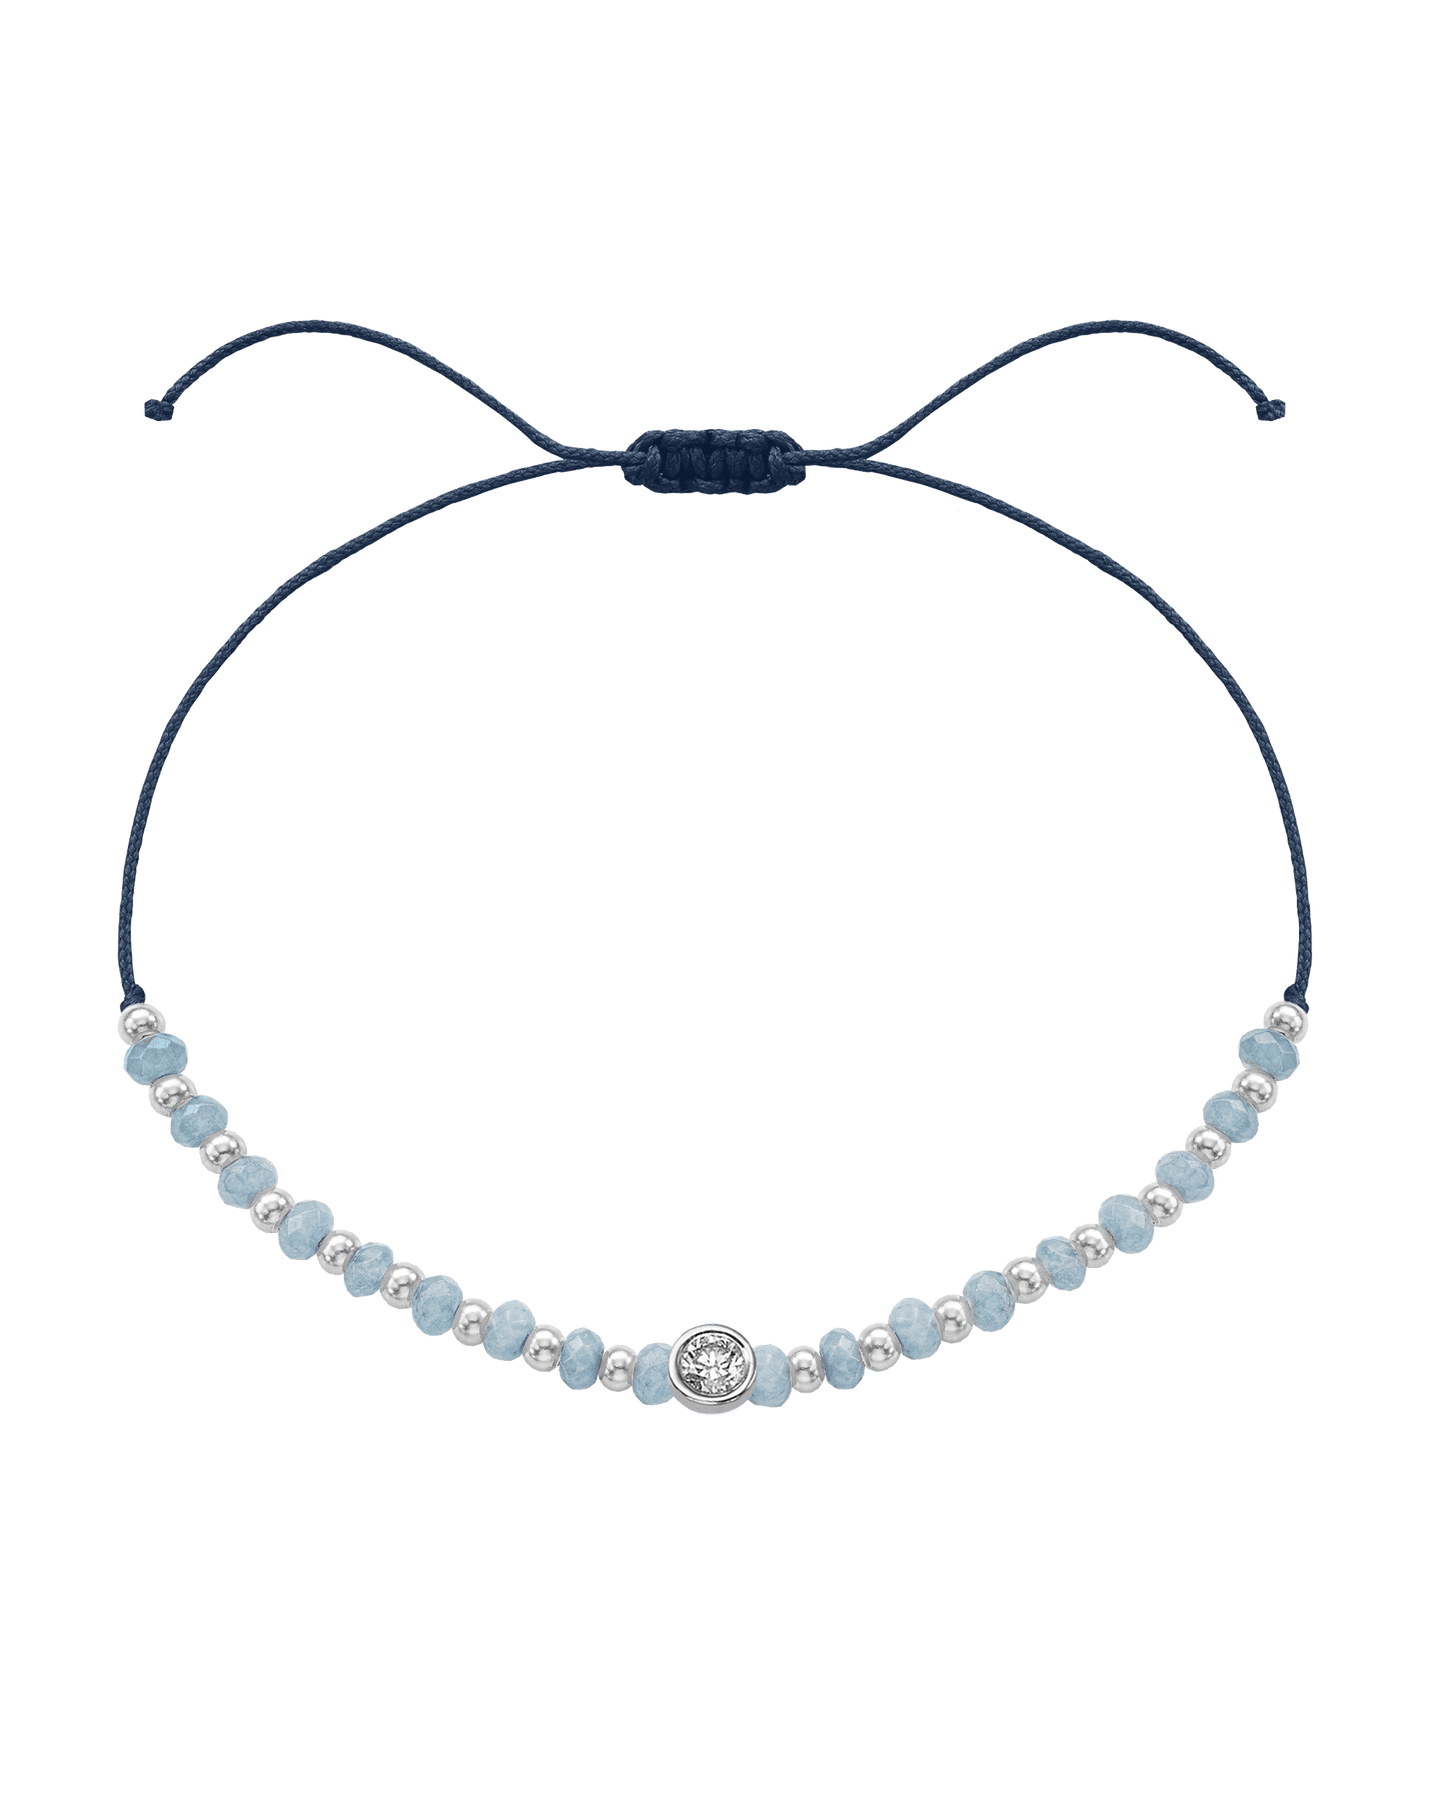 Celestite Gemstone String of Love Bracelet for Mindfulness - 14K White Gold Bracelets 14K Solid Gold Navy Blue Large: 0.1ct 